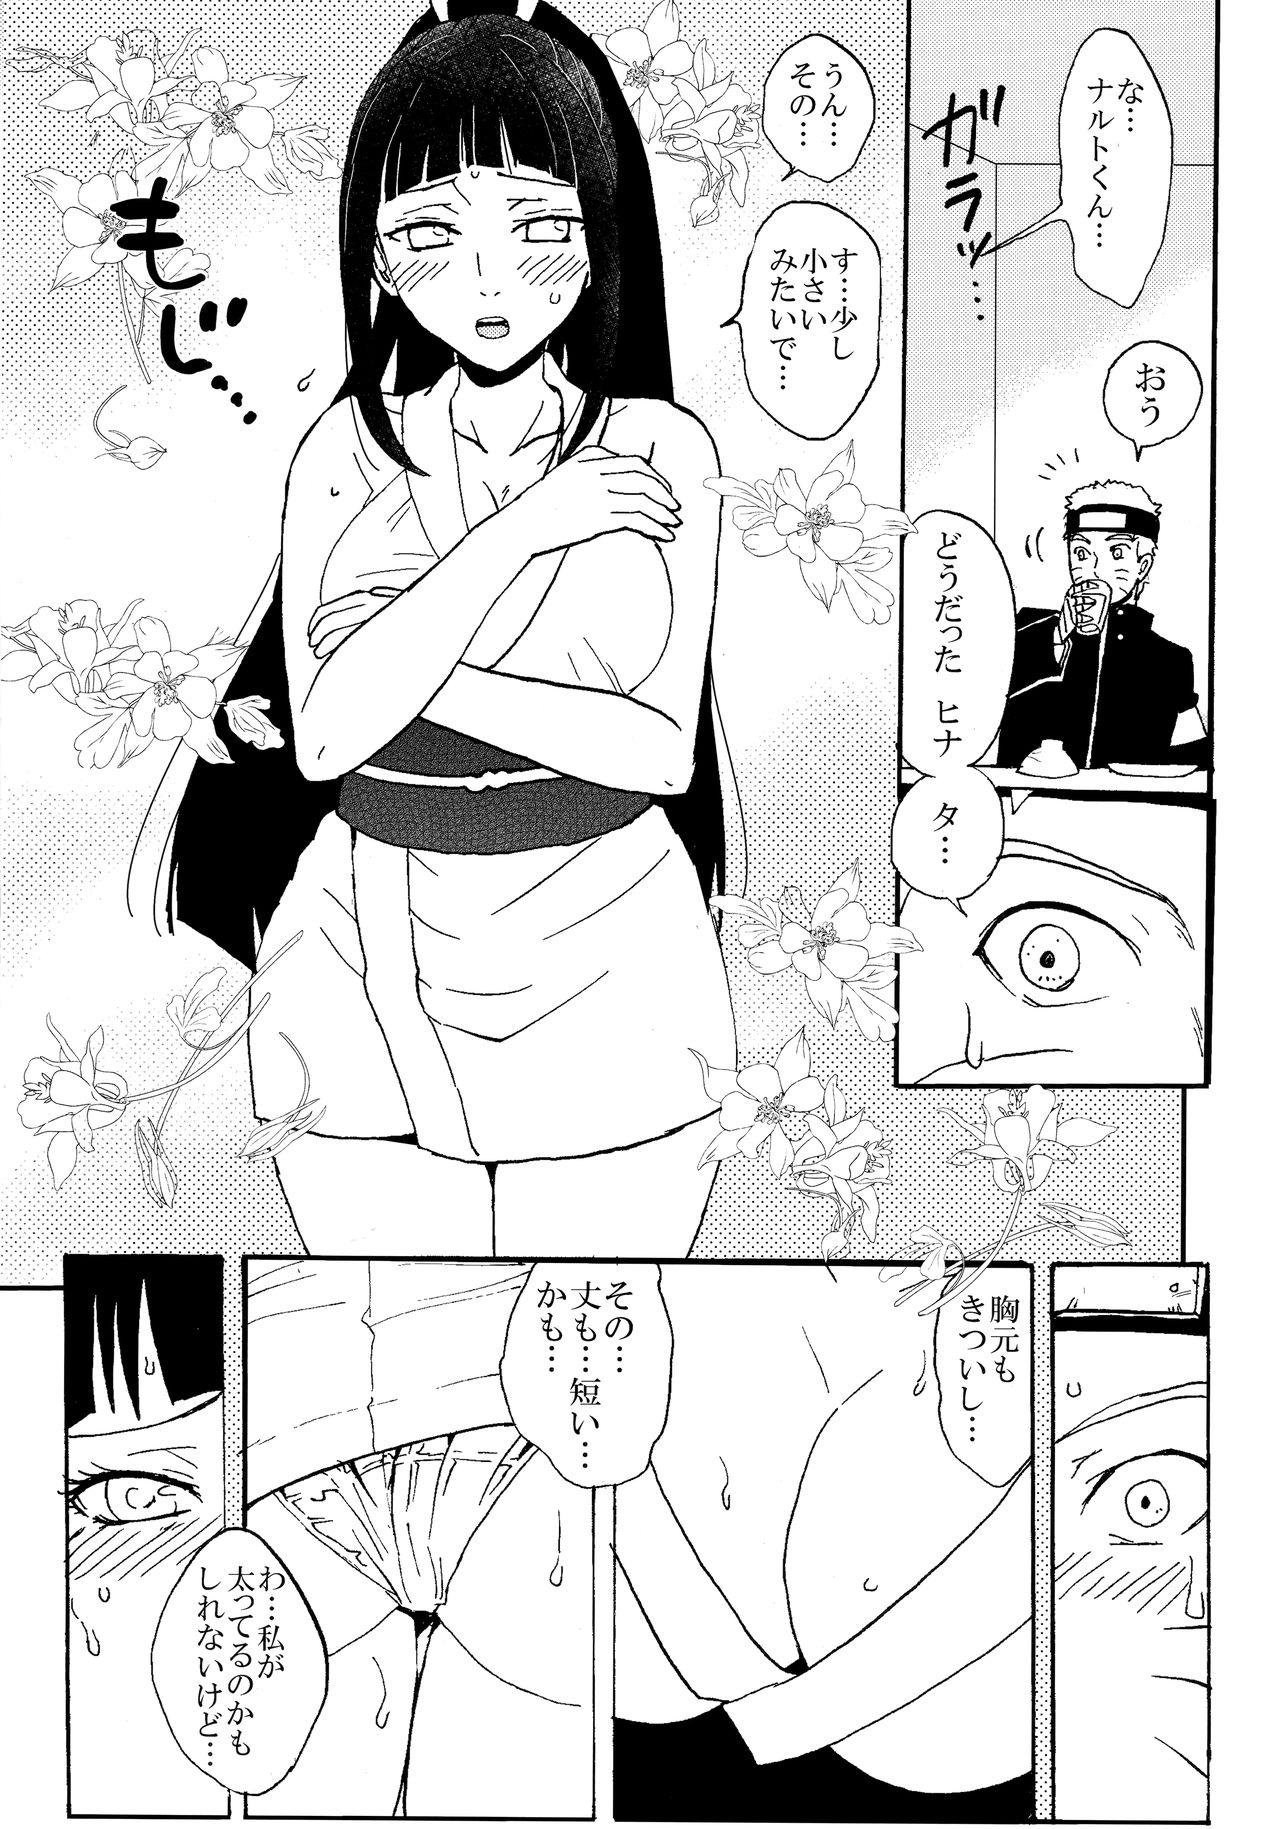 Gaydudes Shinkon Hinata no Kunoichi Cosplay datteba yo! - Naruto Scissoring - Page 4